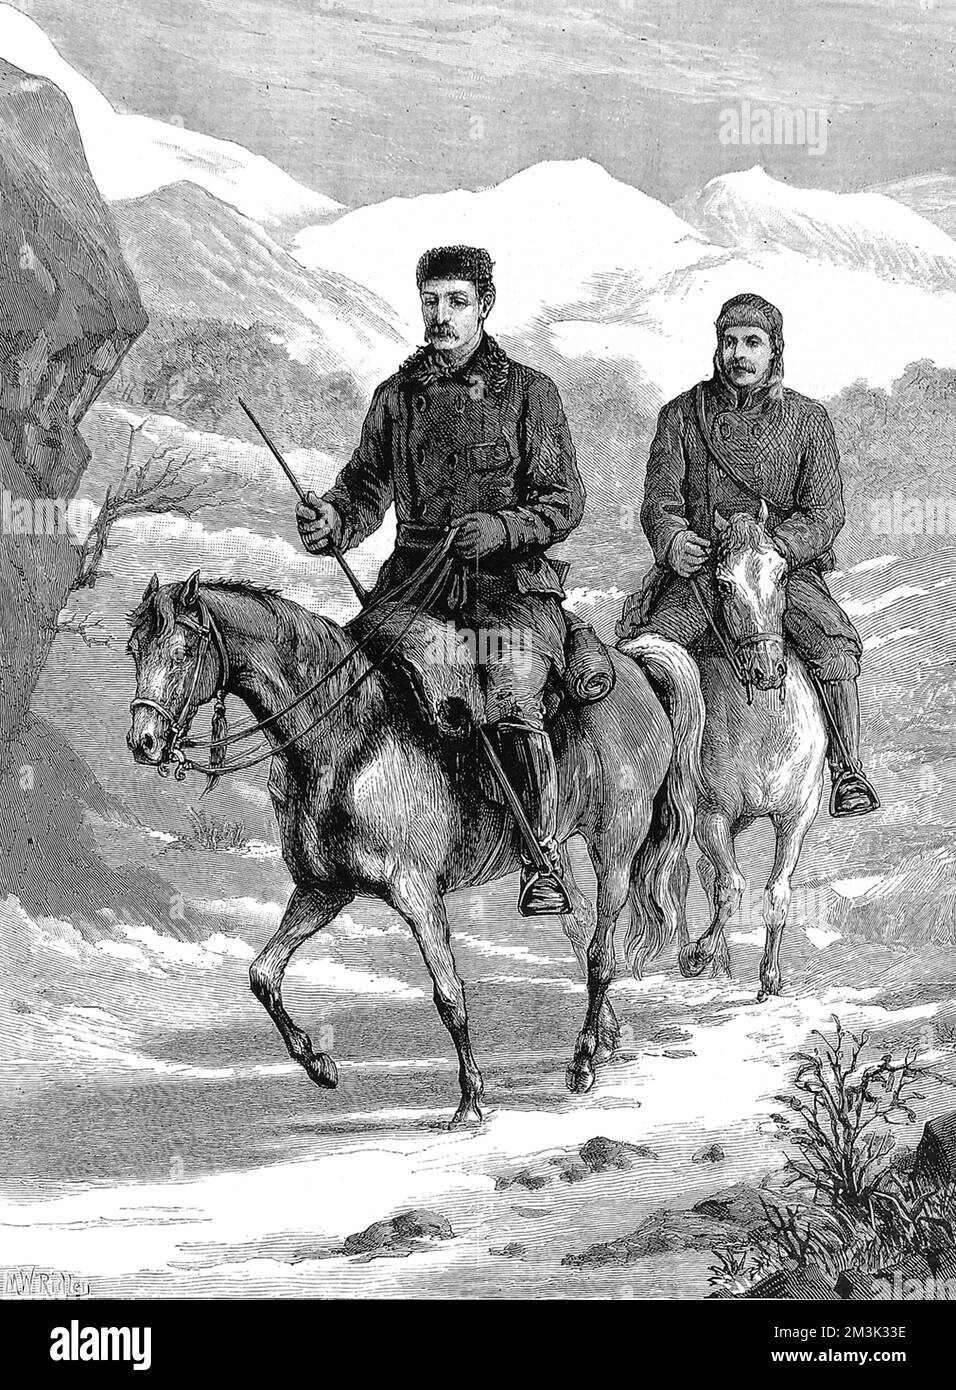 Kapitän Frederick Burnaby (1842 - 1885), englischer Soldat und Entdecker, Reise mit einem Begleiter über die russischen Steppen im Winter 1875. Nach seiner Rückkehr aus Khiva (jetzt Usbekistan) schrieb er einen Bestseller seiner Reisen, der die britische Öffentlichkeit begeisterte. Stockfoto